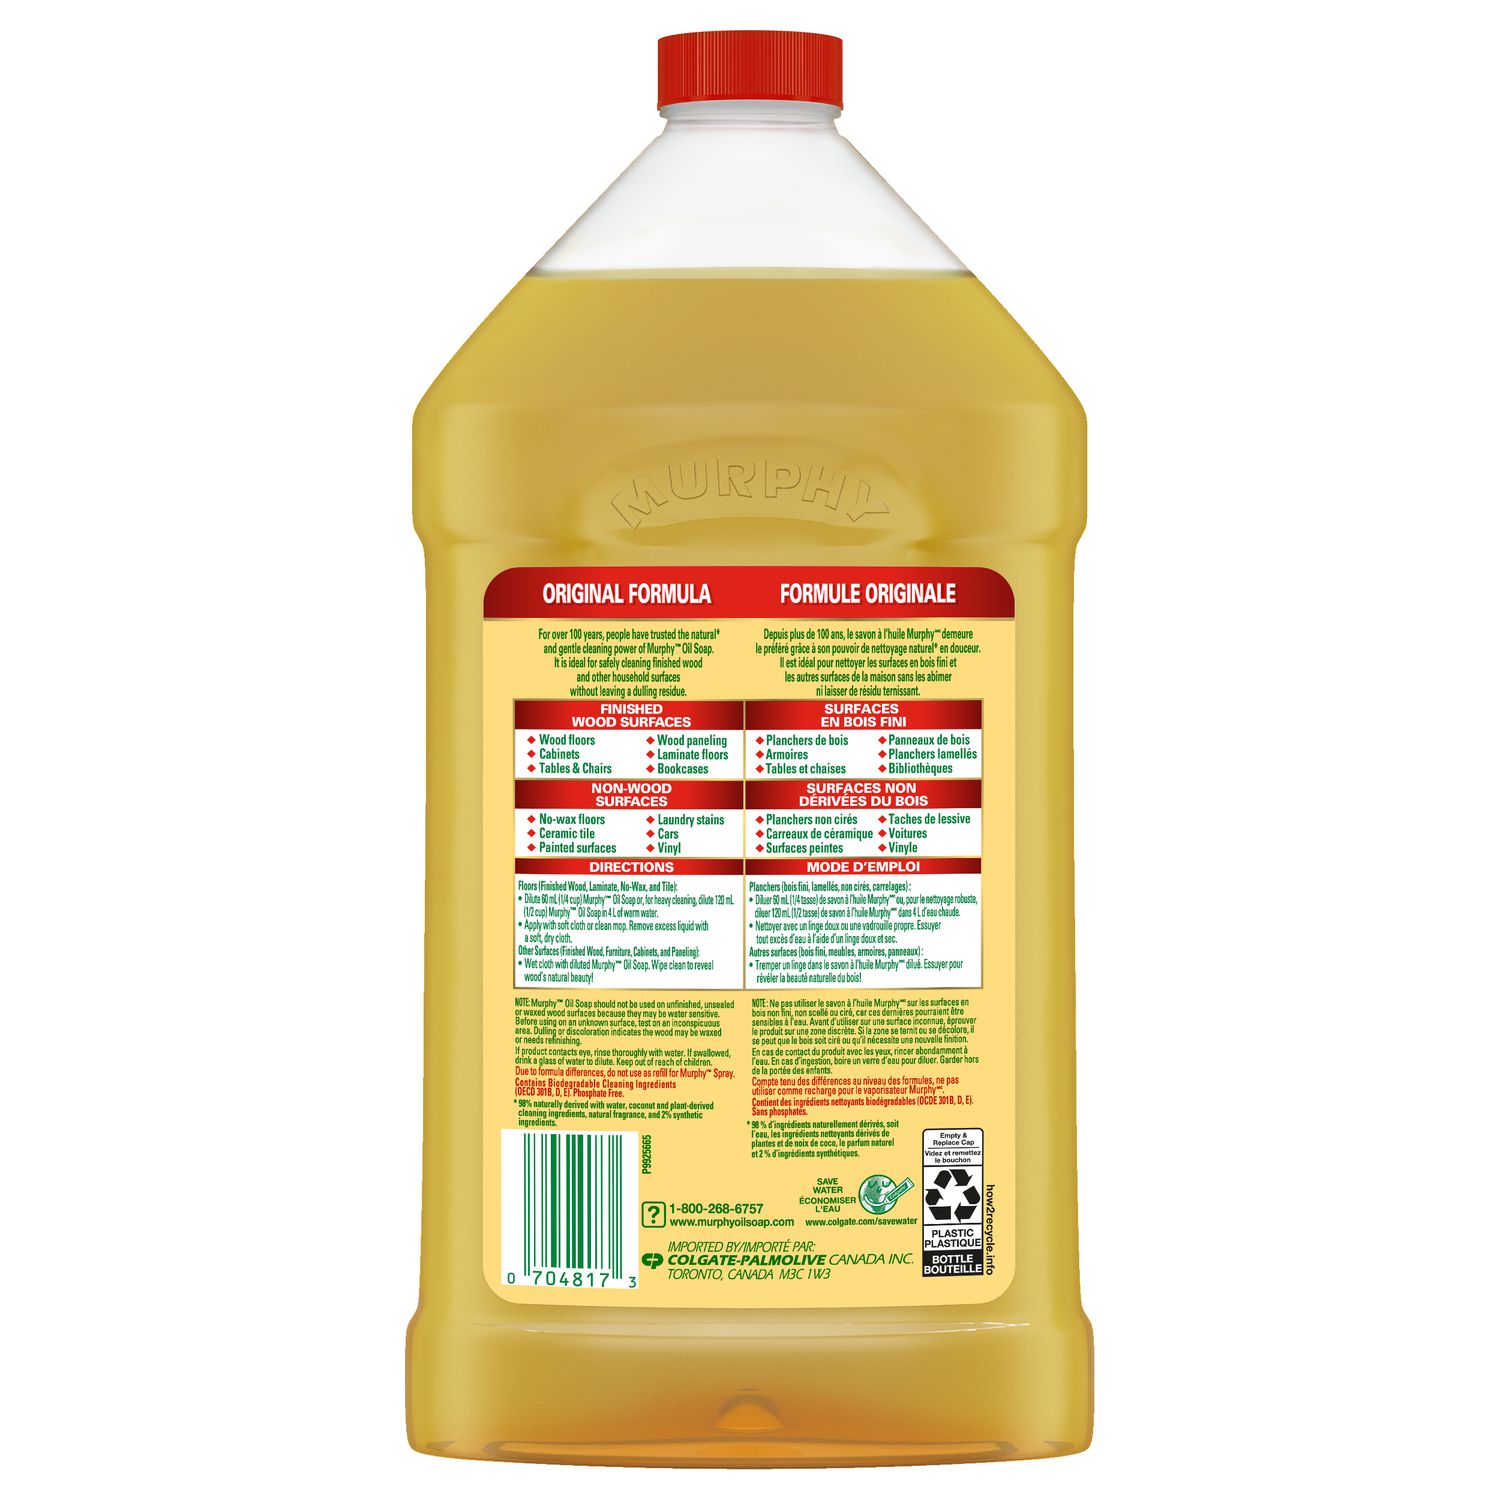 Pack de 1 litre de spray nettoyant parquet huilé Bona 100% naturel